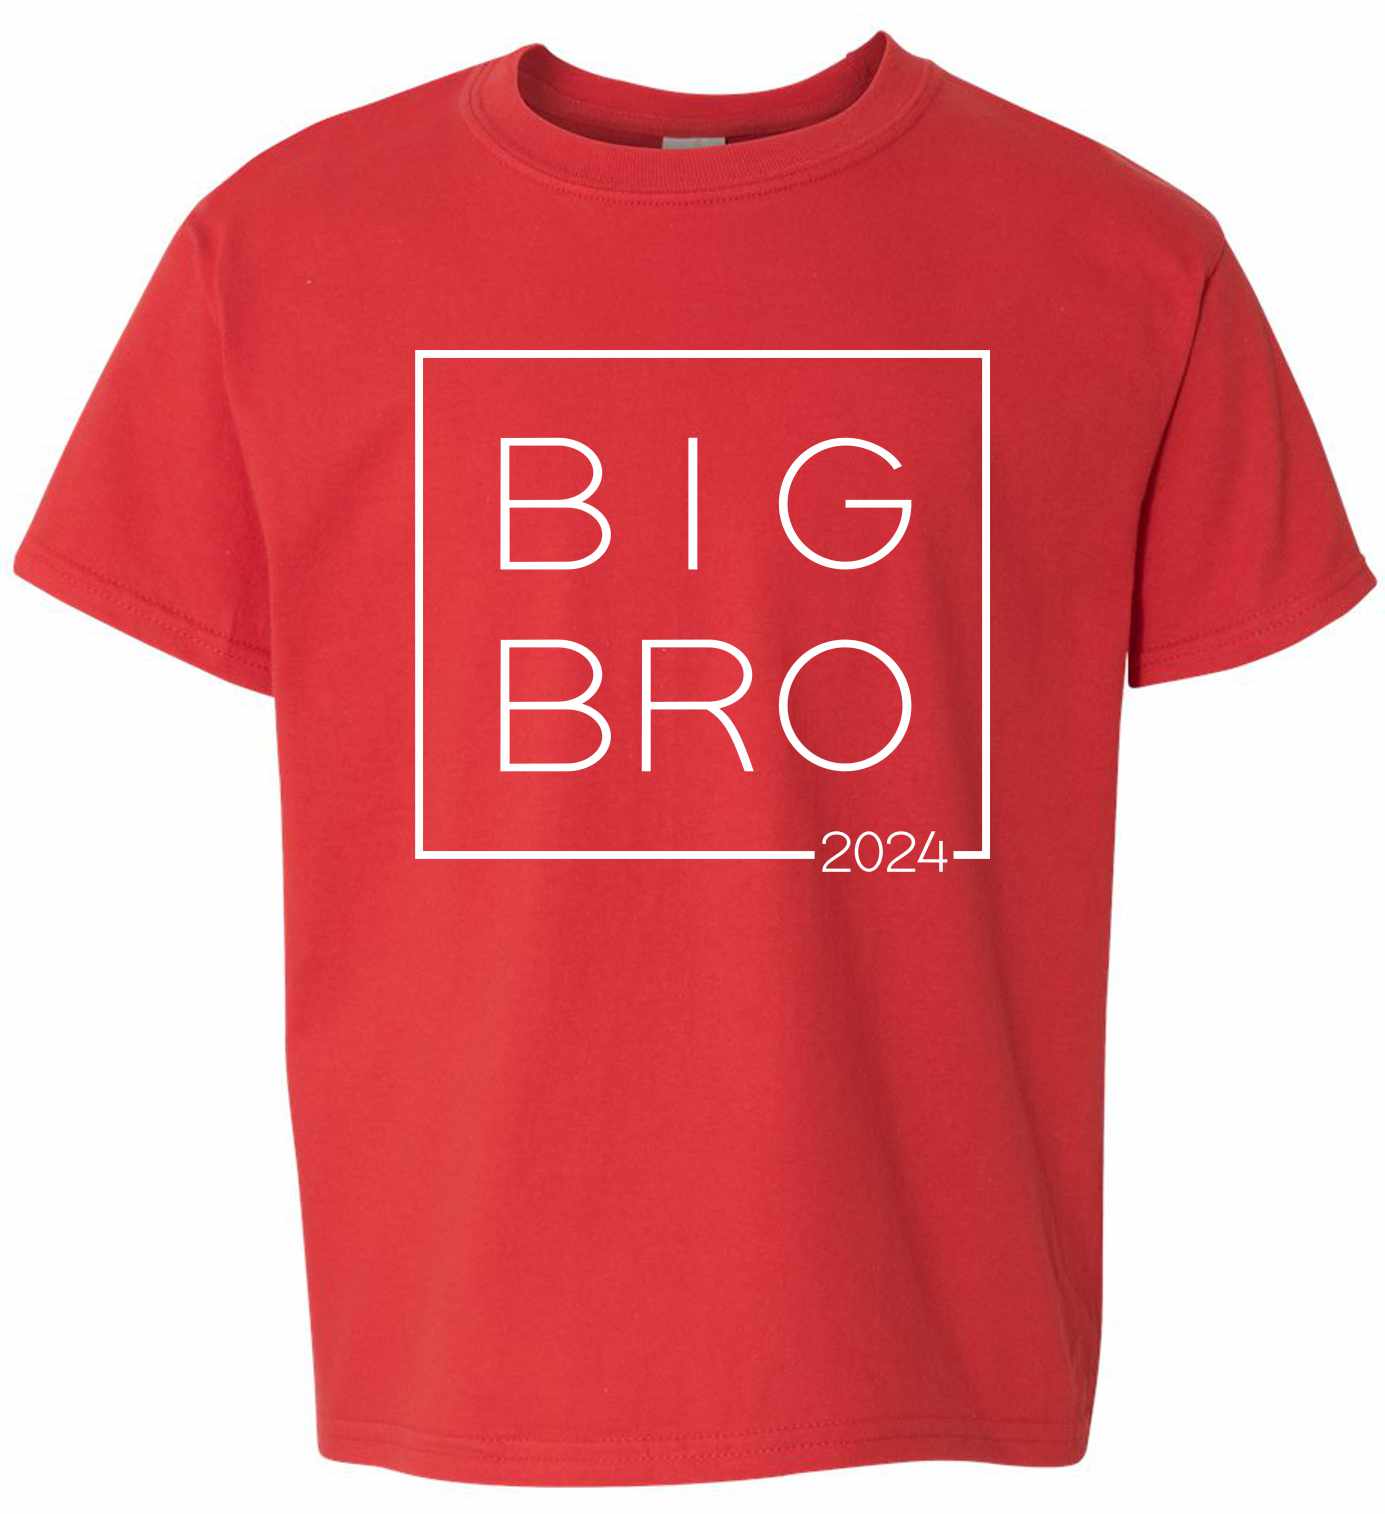 Big Bro 2024 - Big Brother Box on Kids T-Shirt